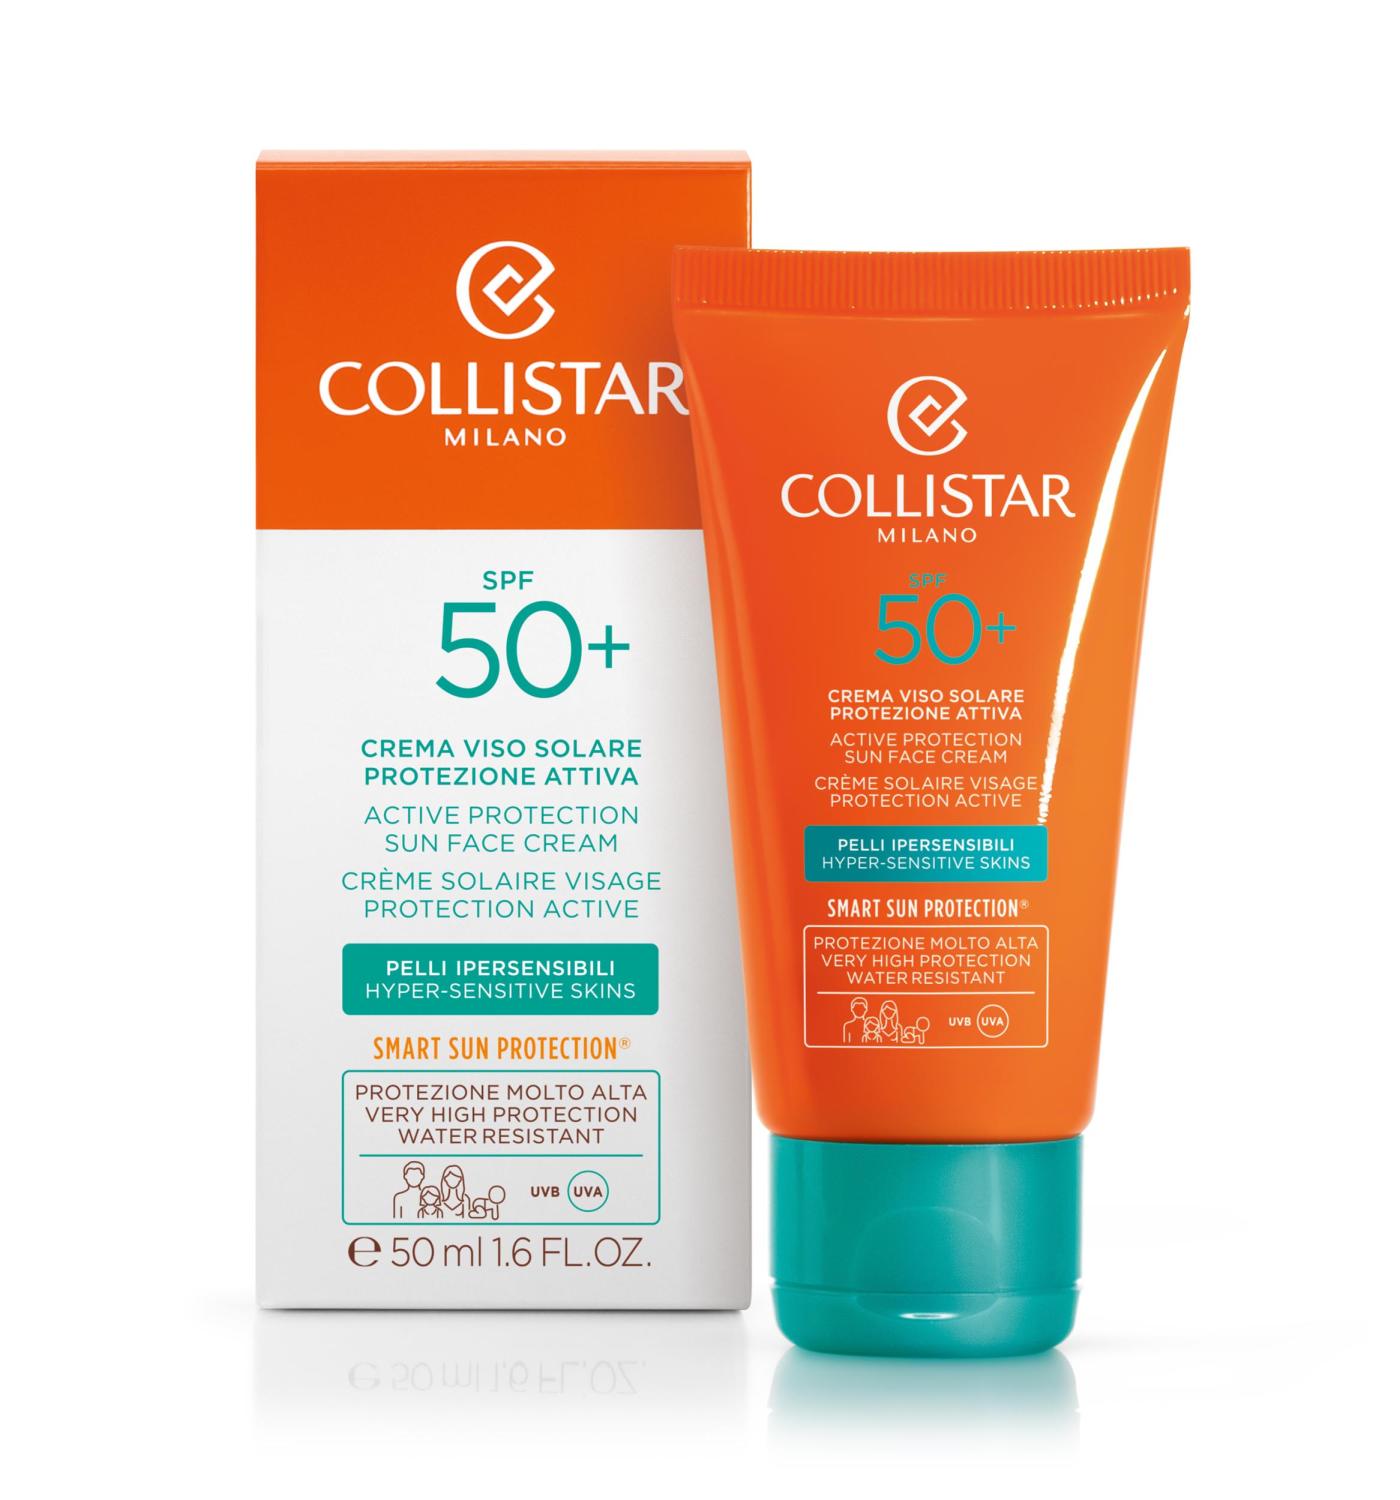 Collistar Active Protection Sun Face Cream Spf 50+